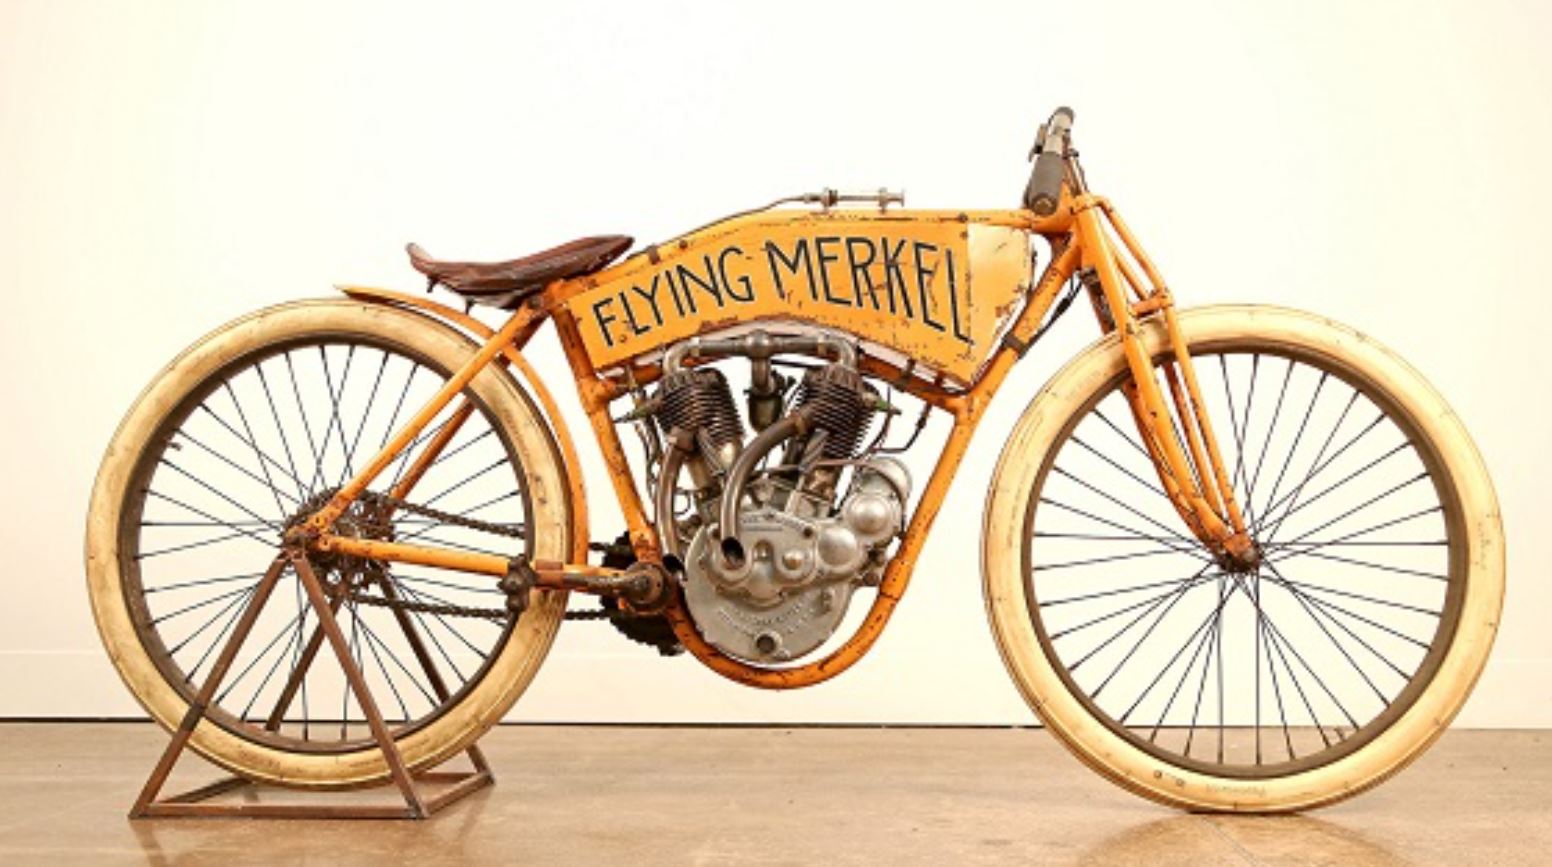 Flying Merkel Board Track Racer là mẫu xe được Joe sản xuất vào năm 1911